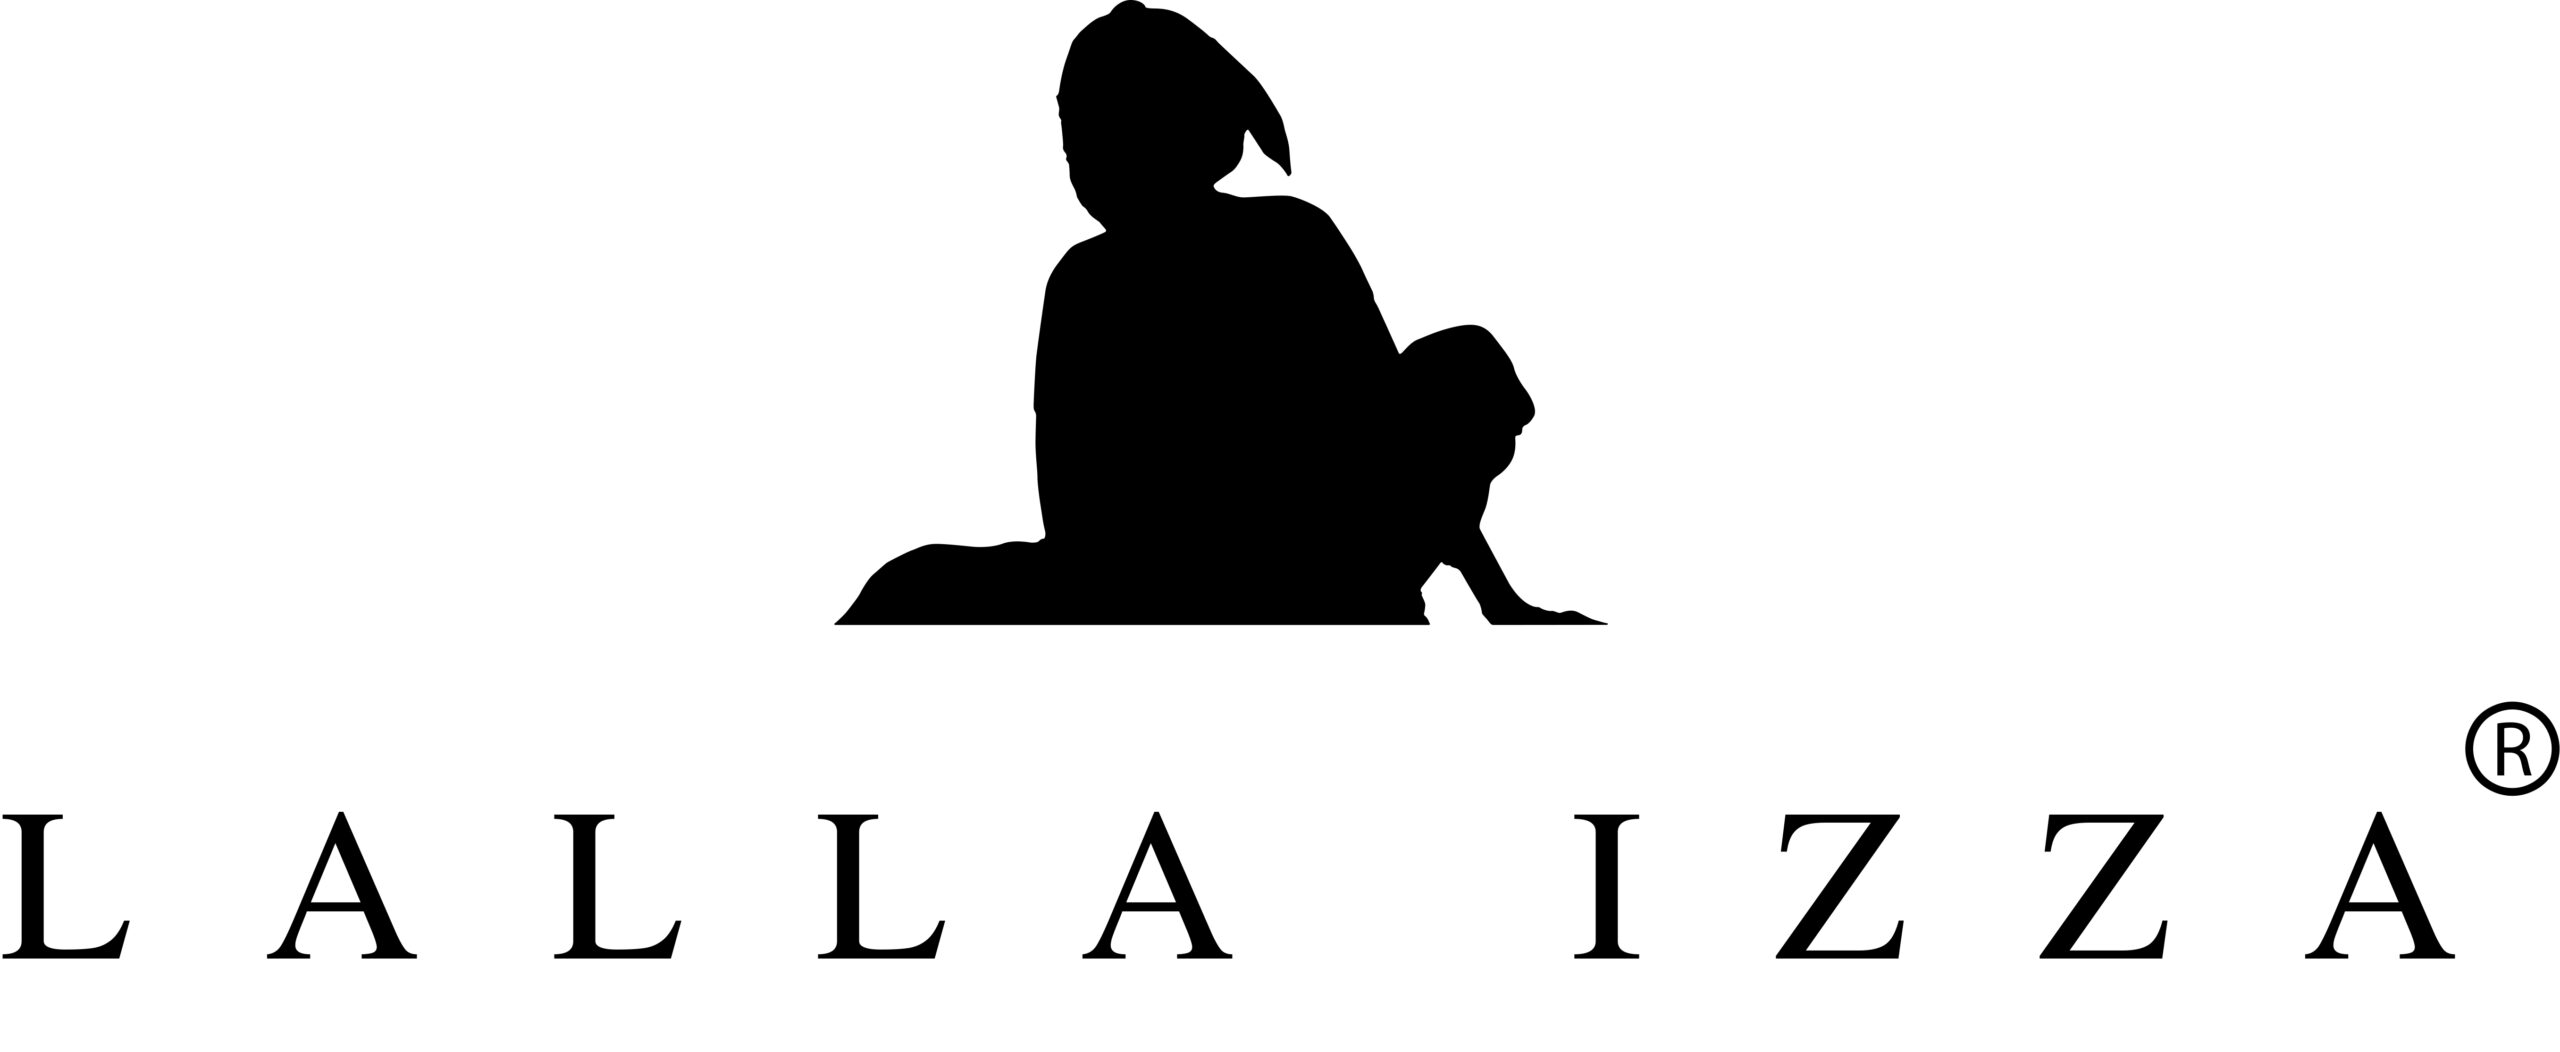 Lalla Izza